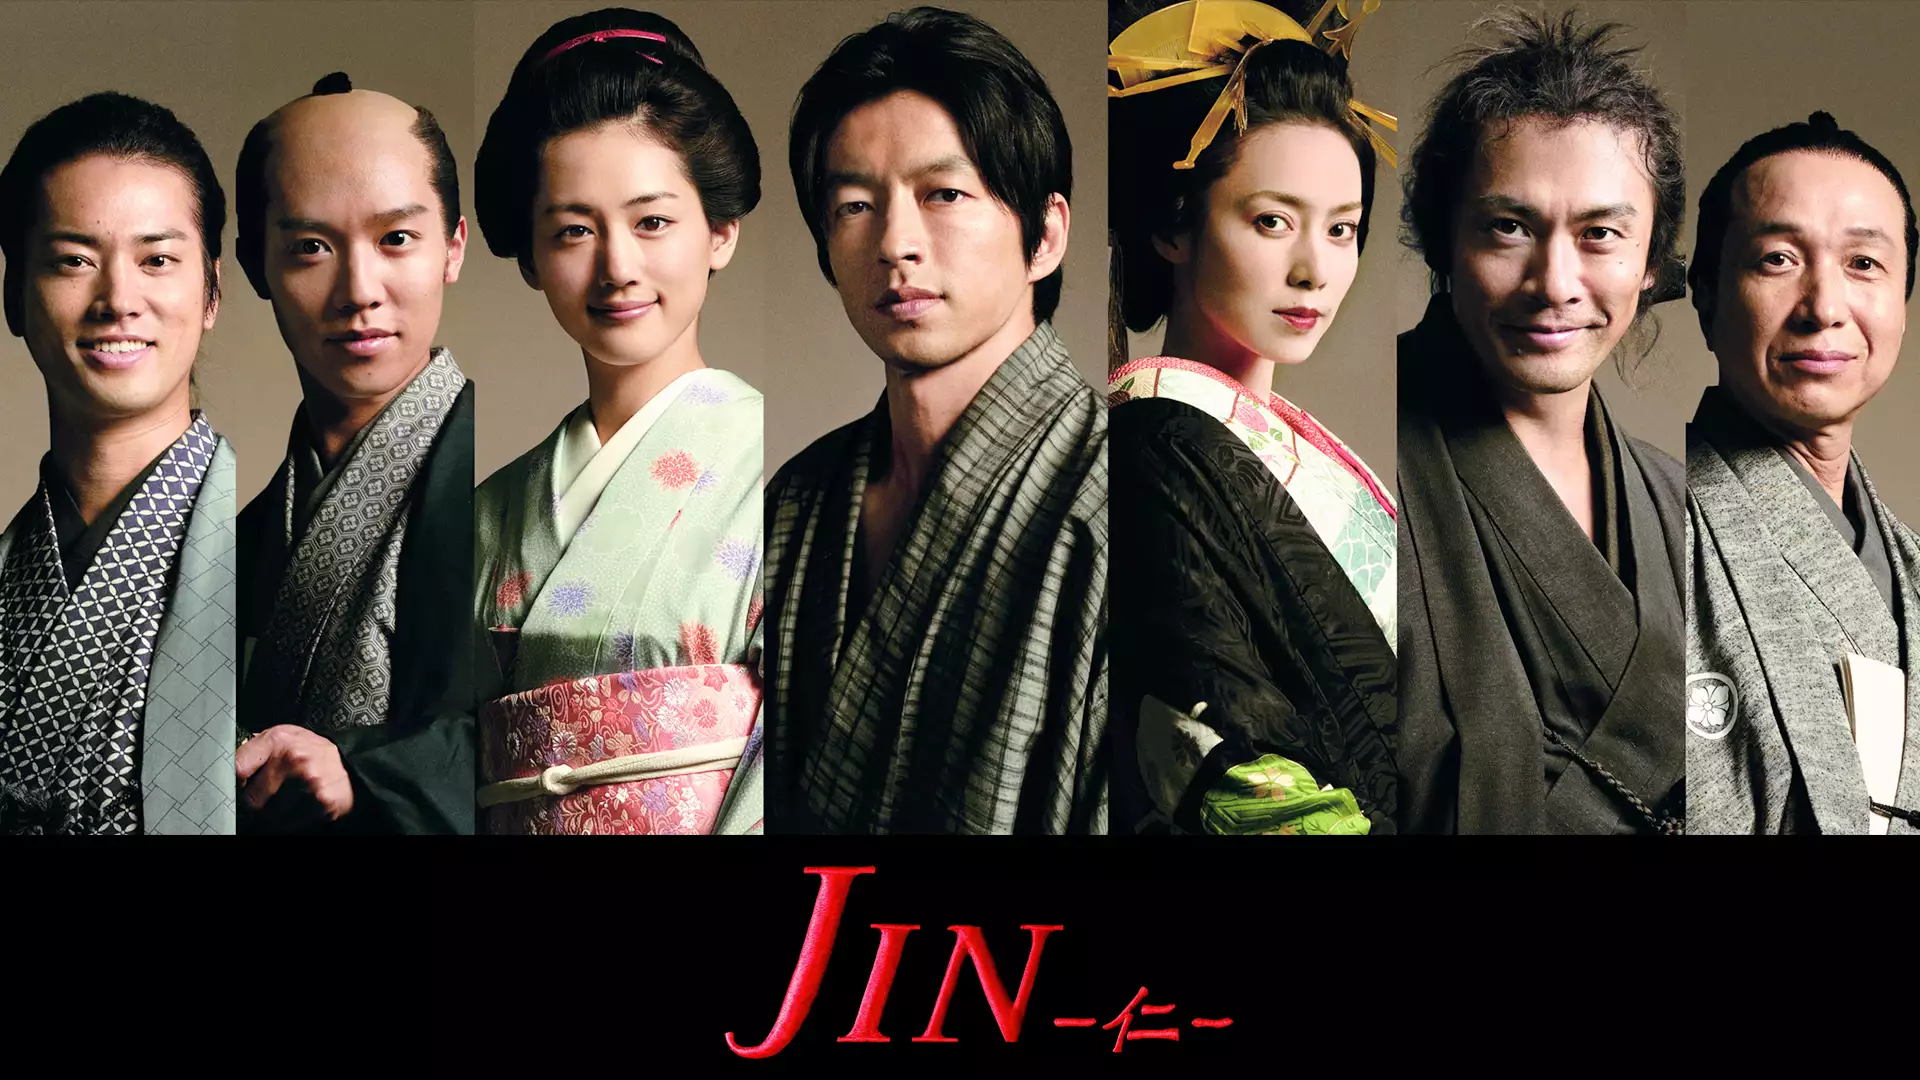 JIN -仁-(国内ドラマ / 2009) - 動画配信 | U-NEXT 31日間無料トライアル